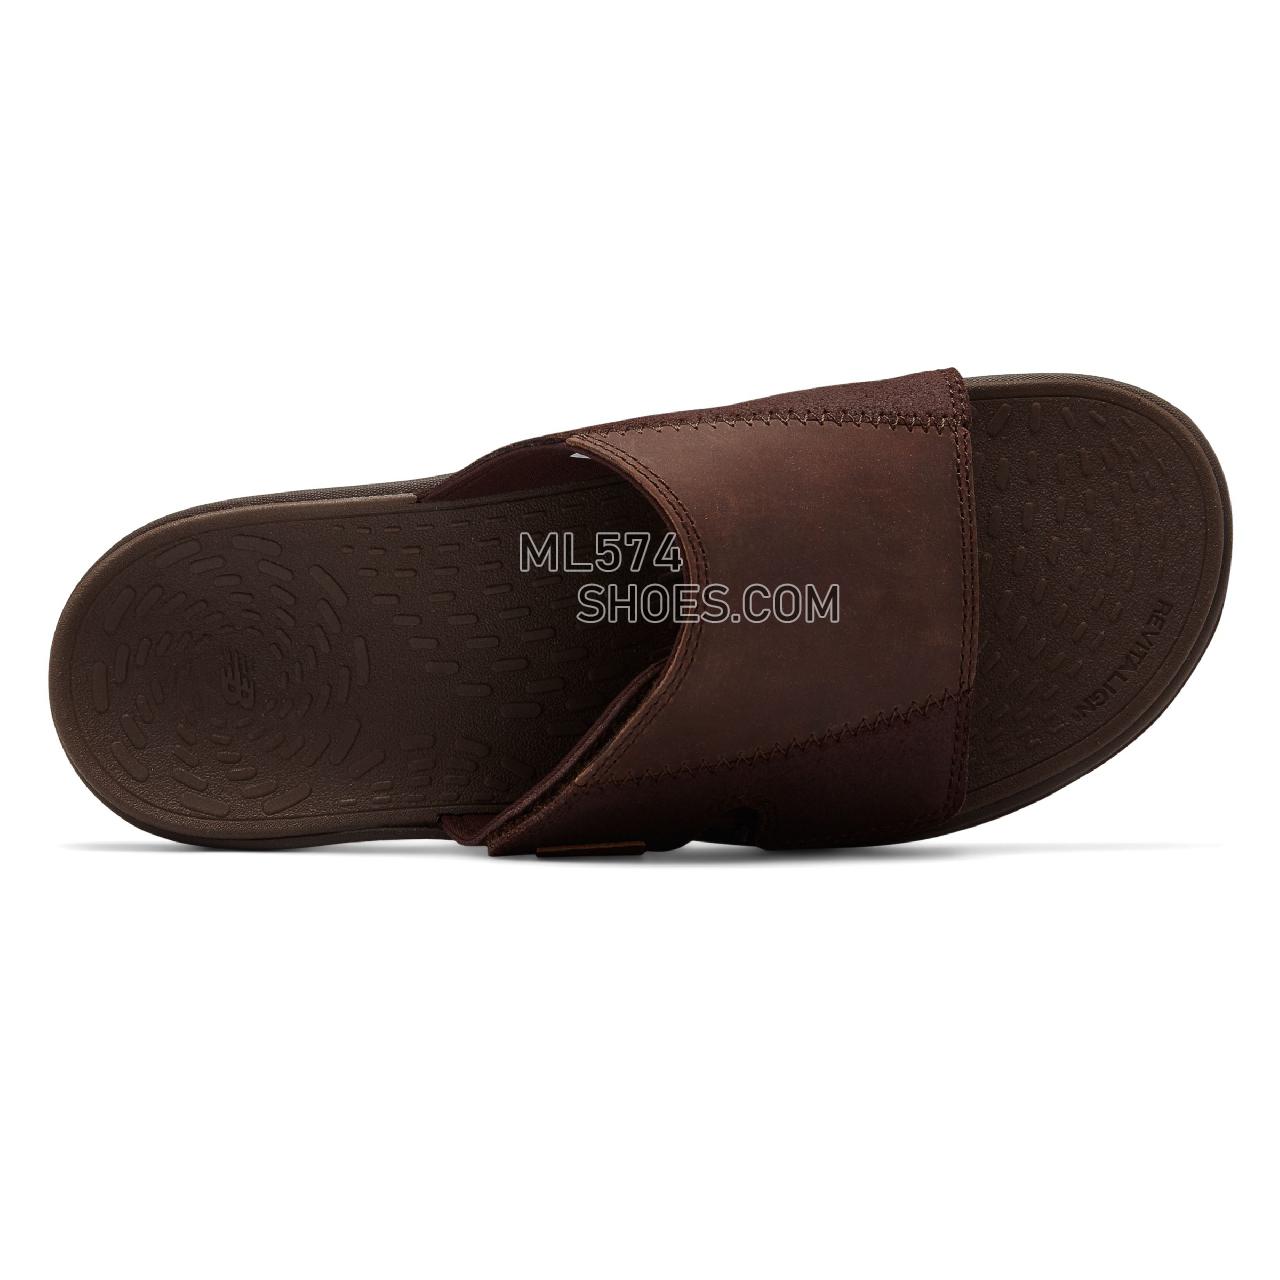 New Balance Quest Slide - Men's 3100 - Sandals Brown - MR3100WSK